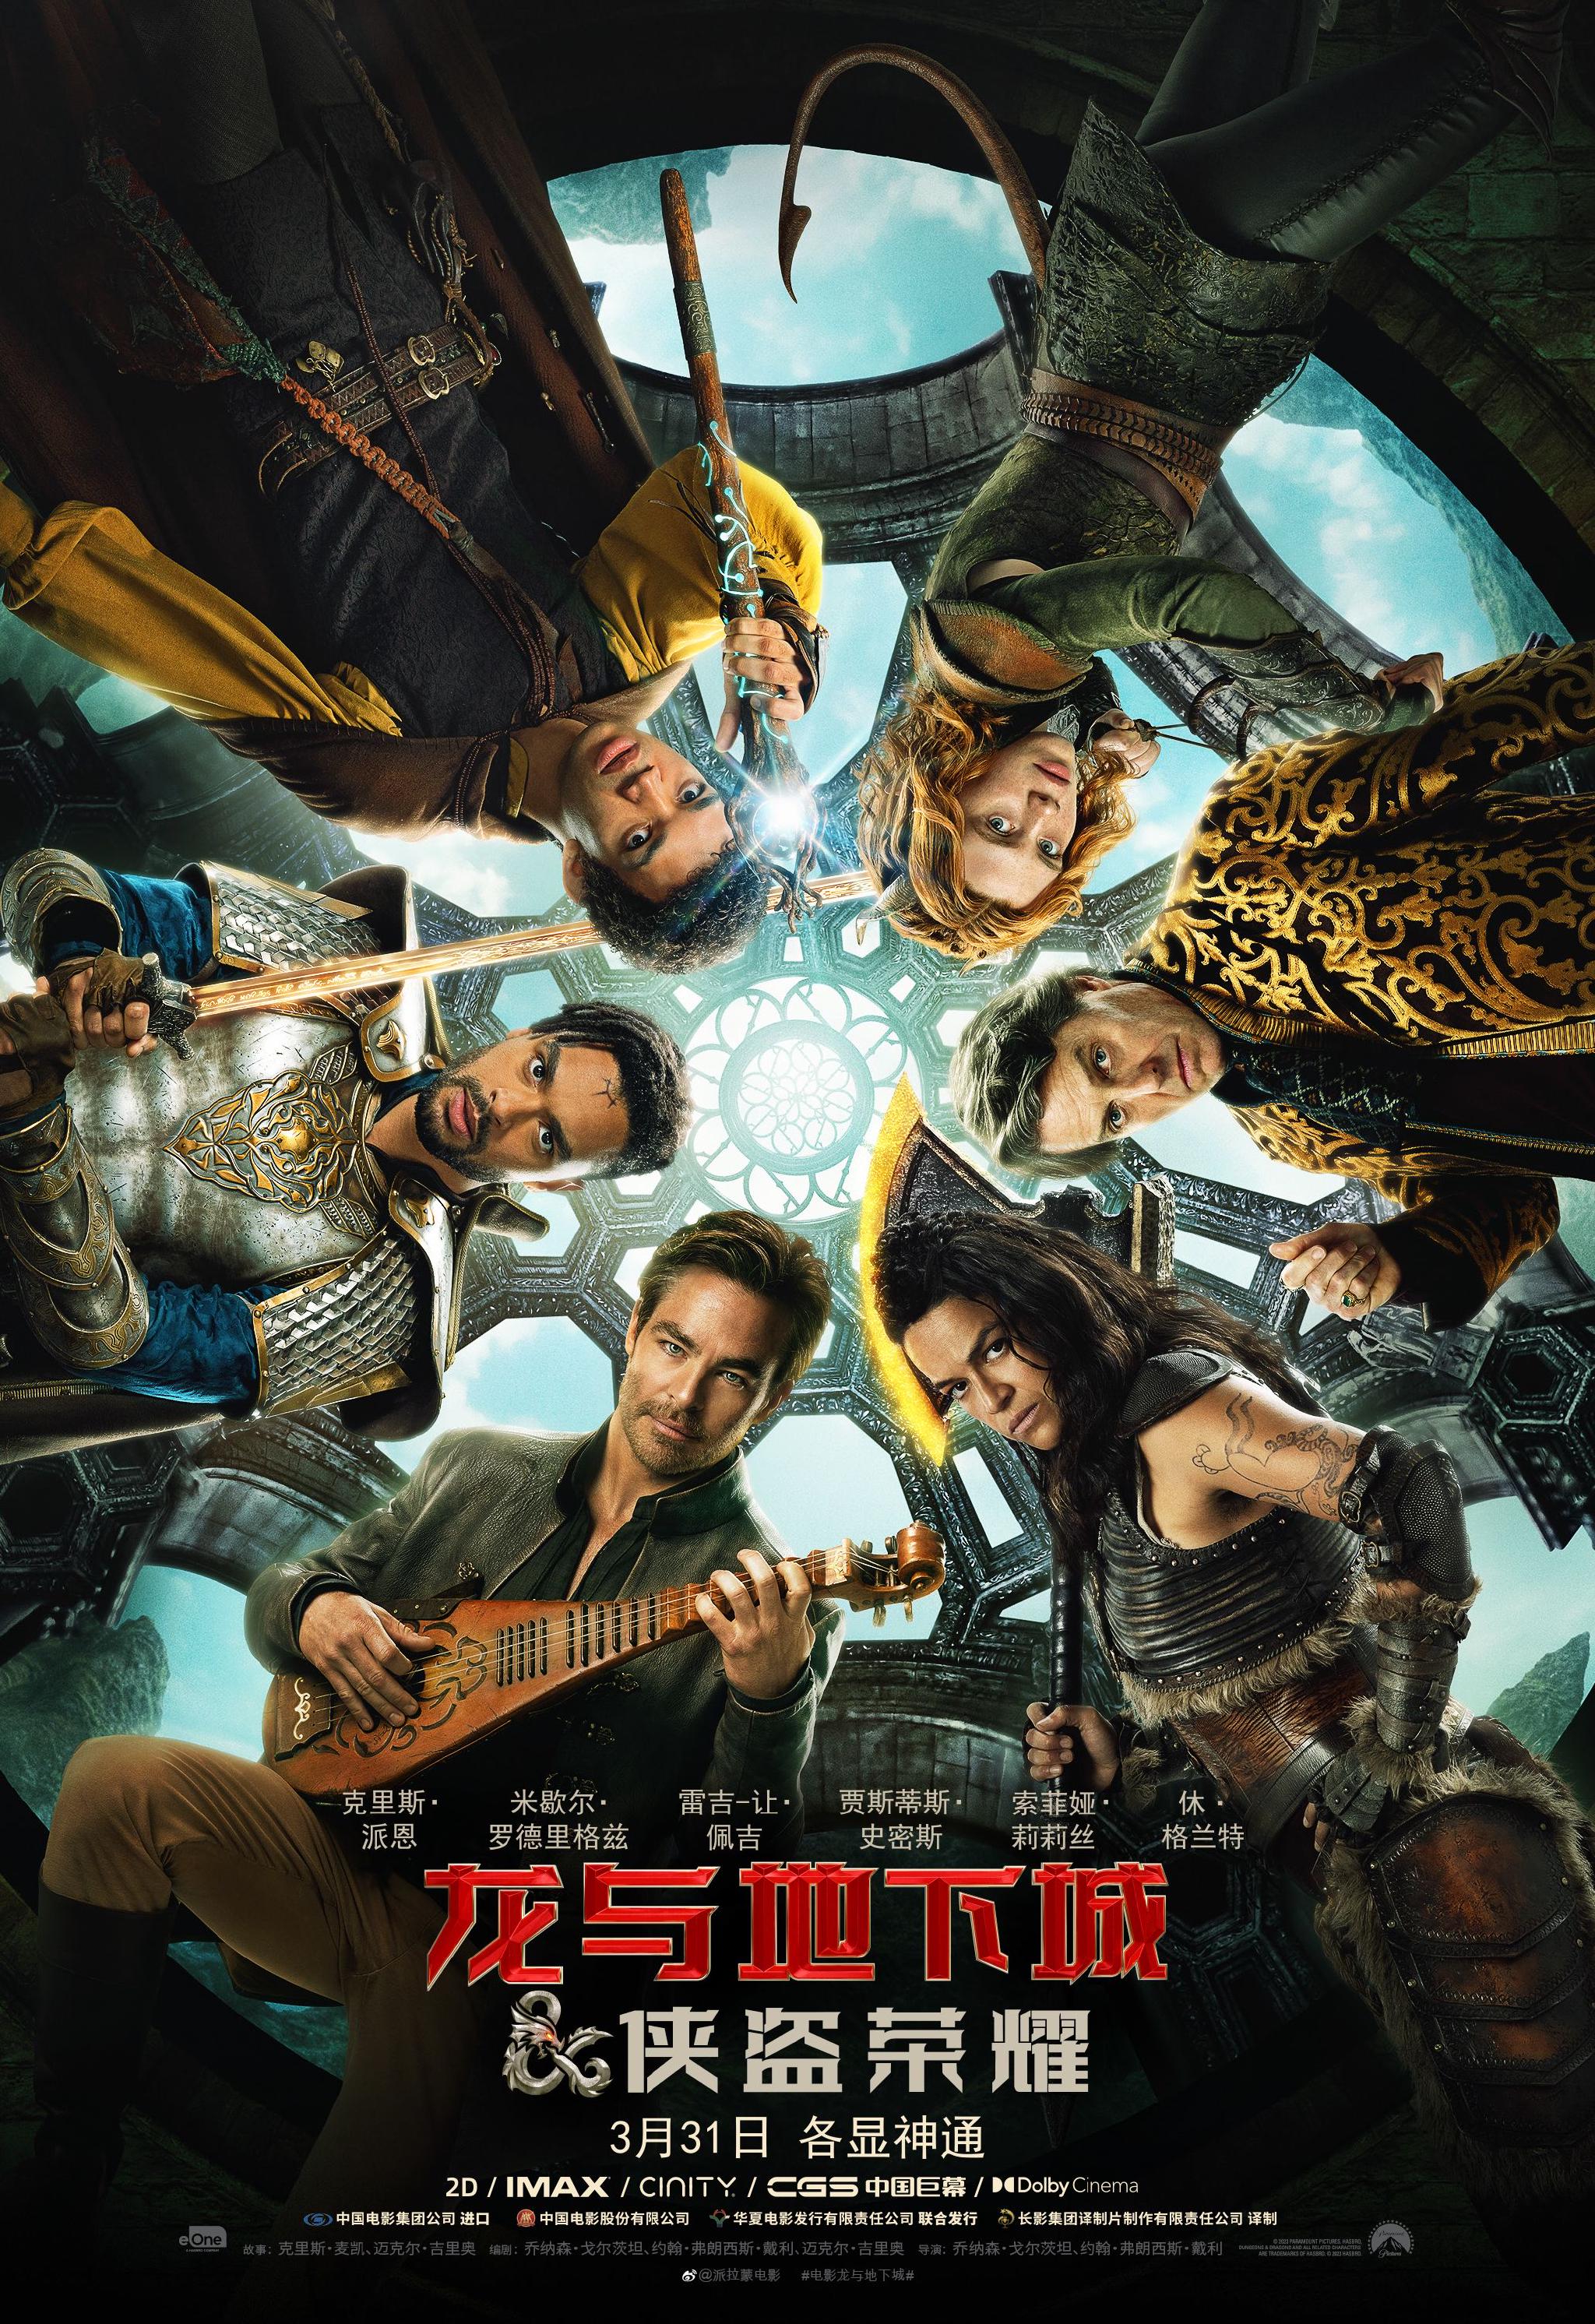 《龙与地下城:侠盗荣耀》定档3月31日,五大职业英雄迎战恶魔